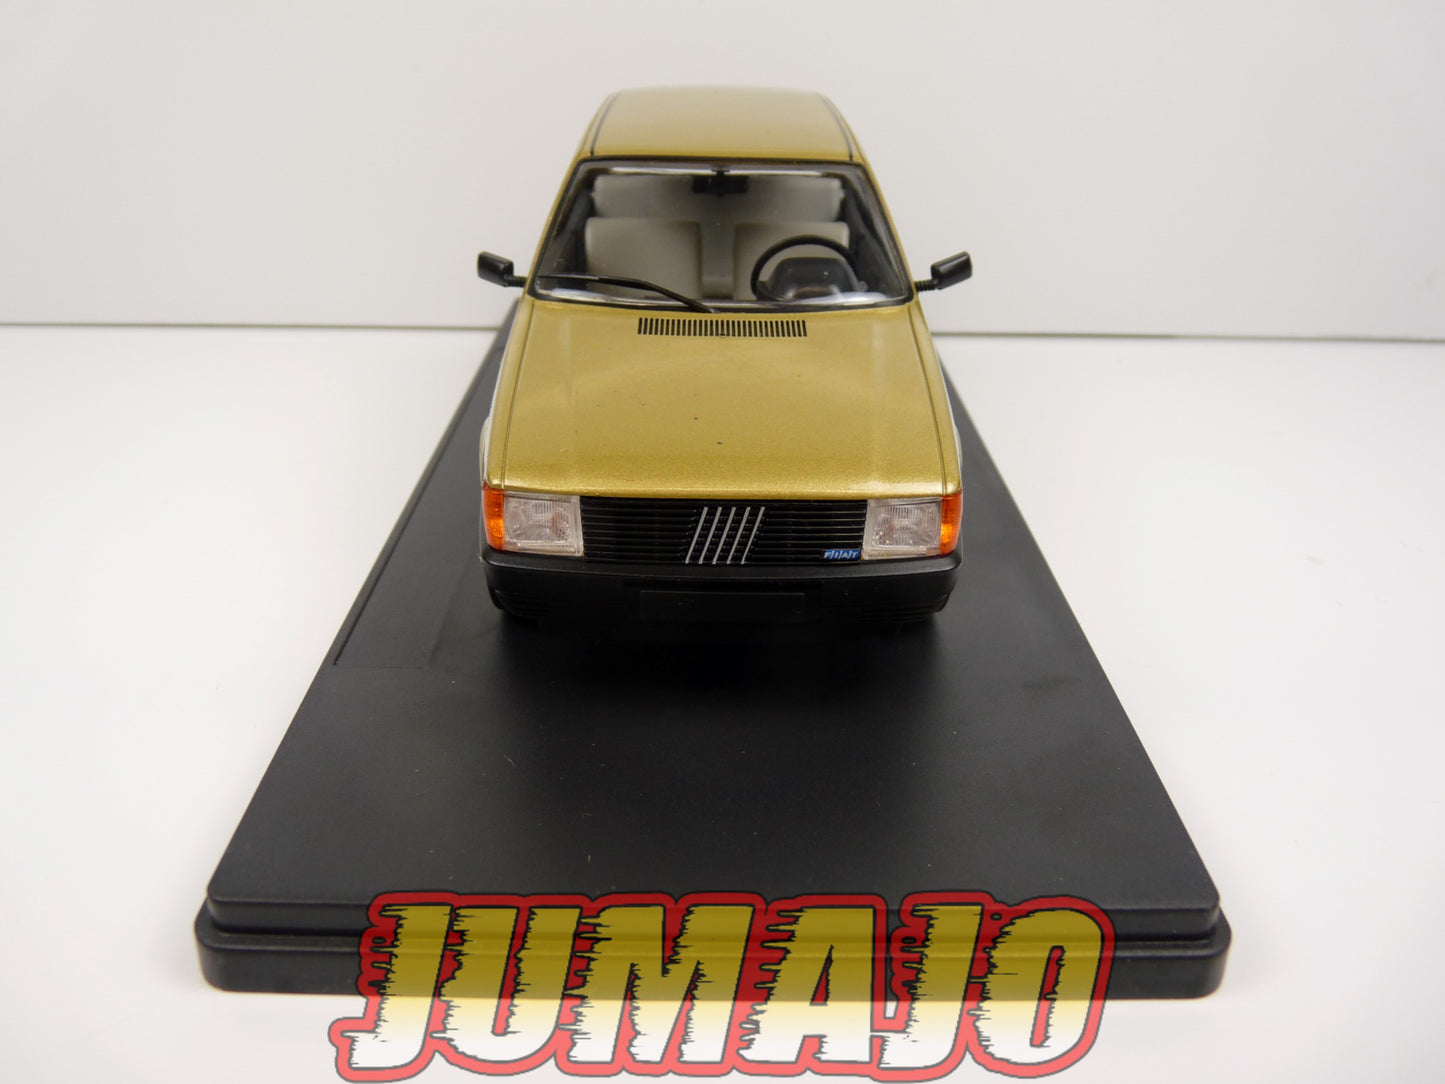 PTVQ28 Voiture 1/24 SALVAT Models : Fiat uno 1983